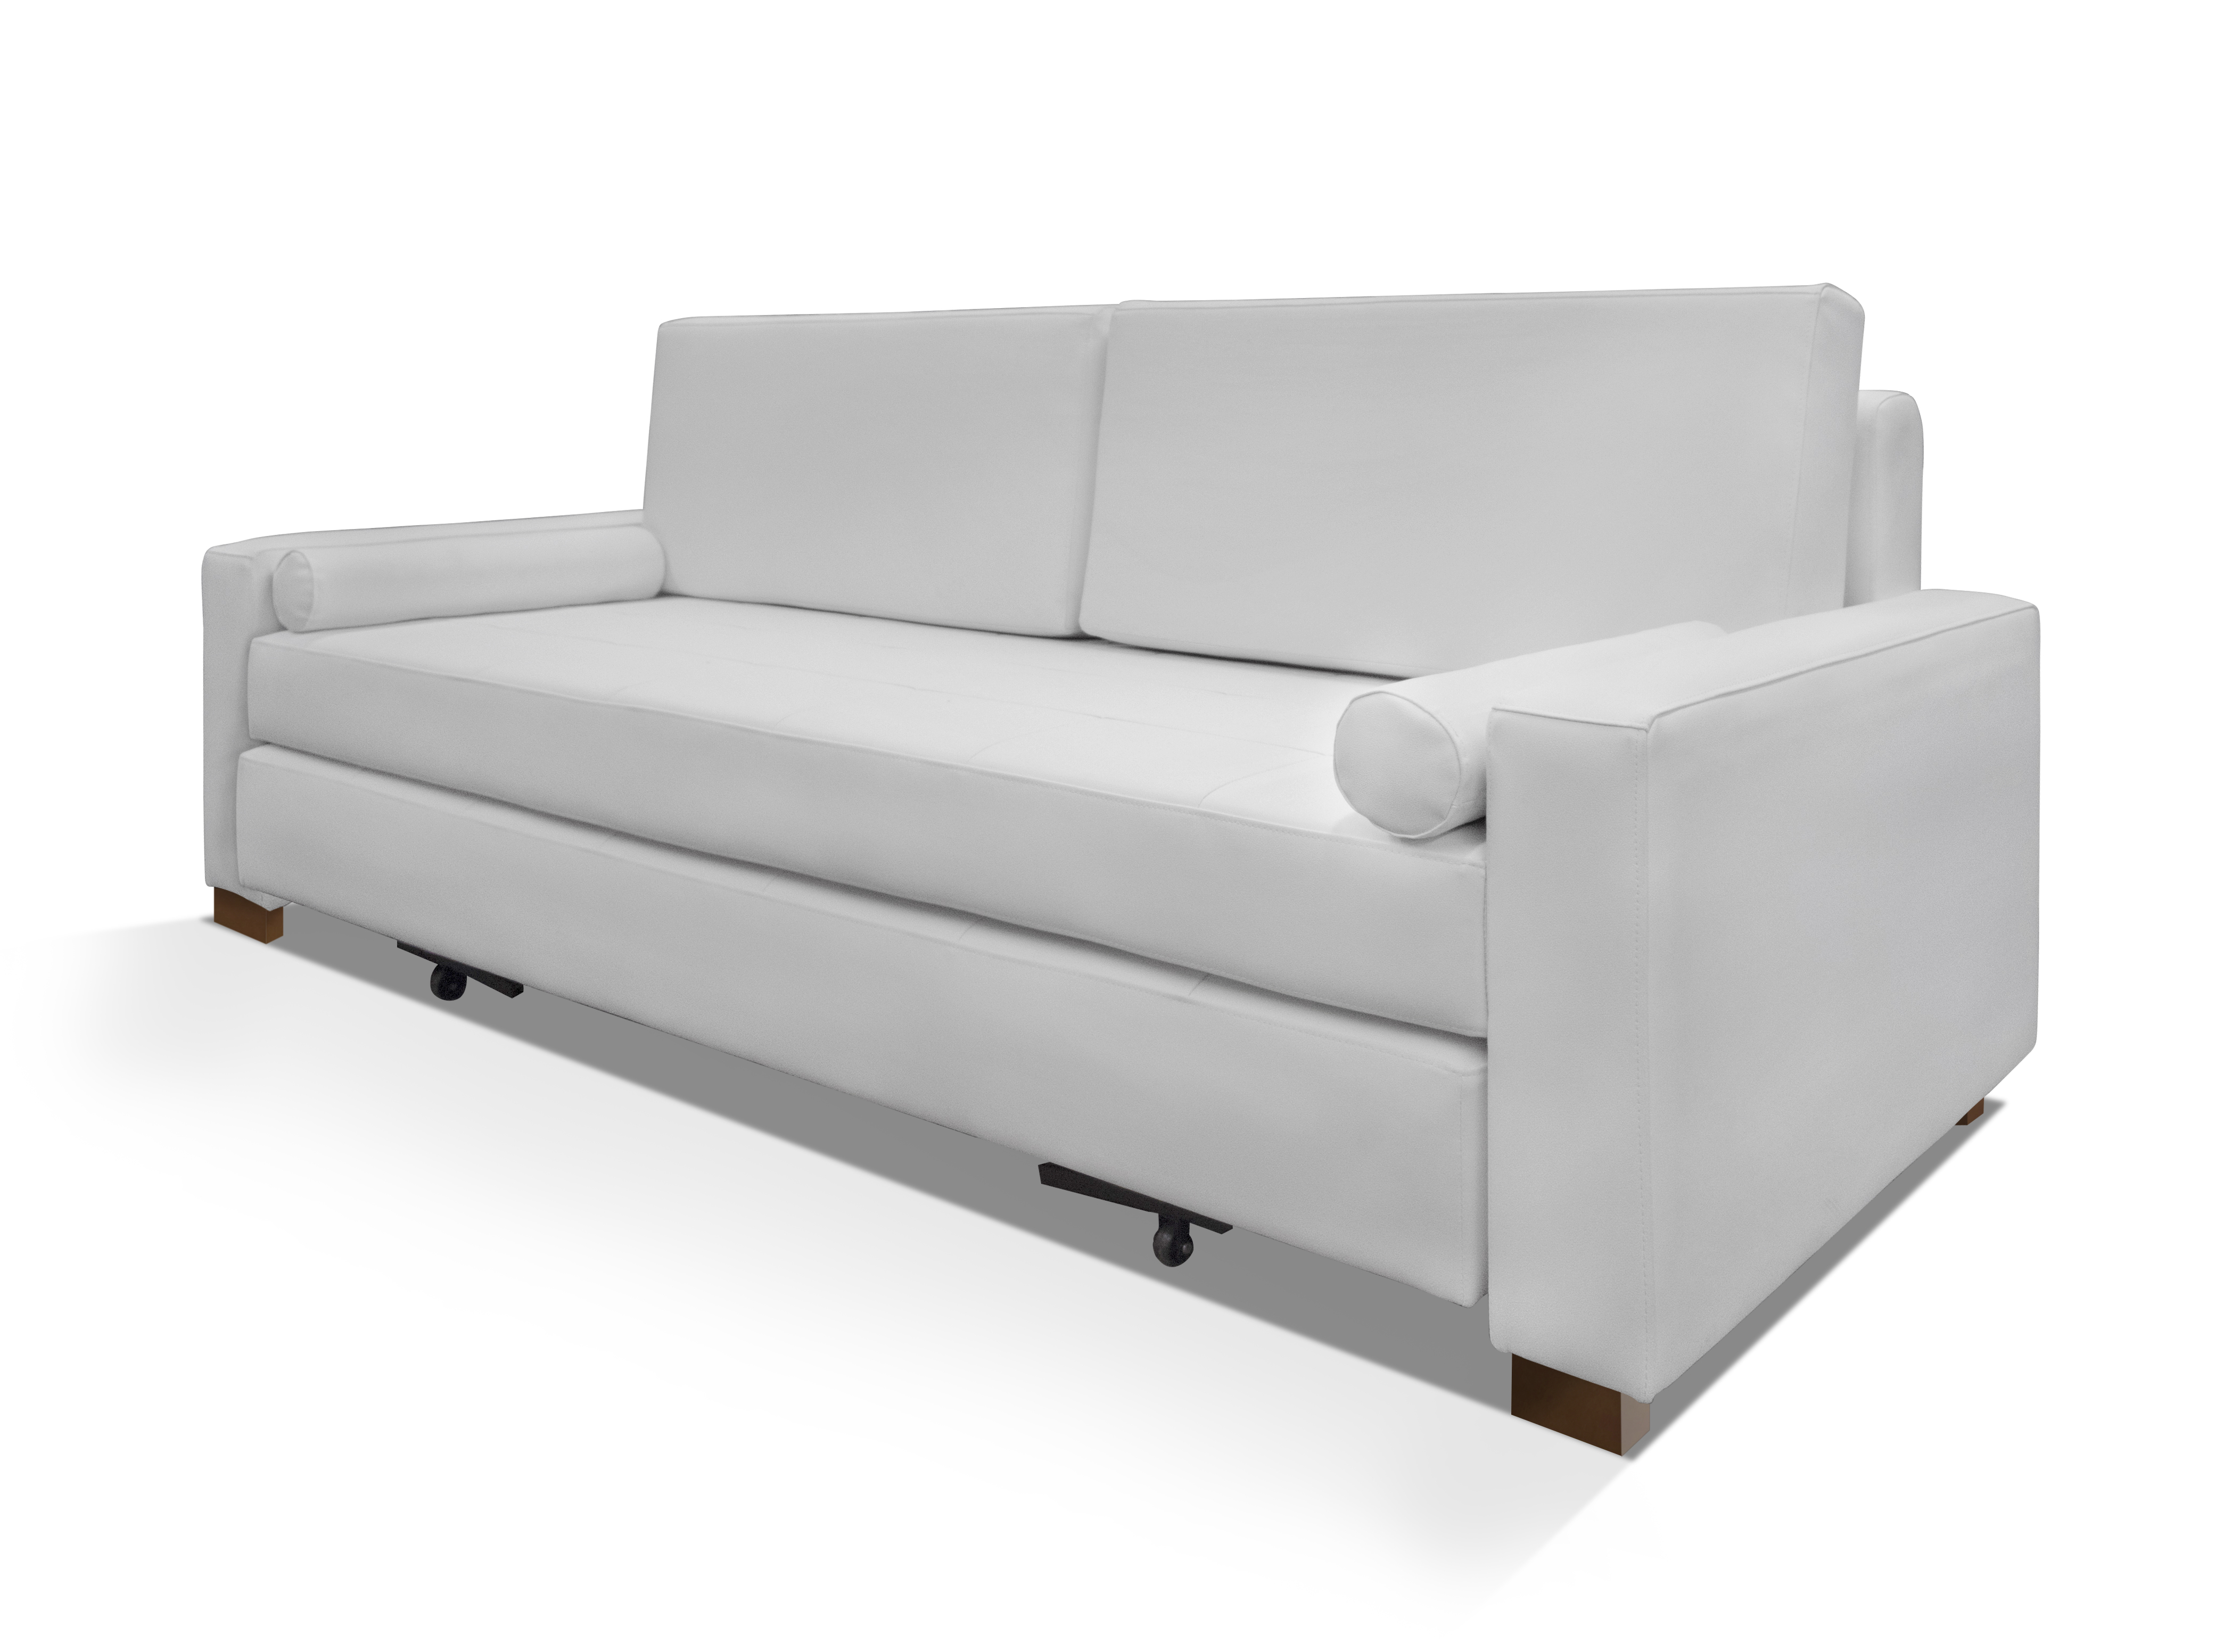 Sofa blanca dos plazas – Beleman Importaciones